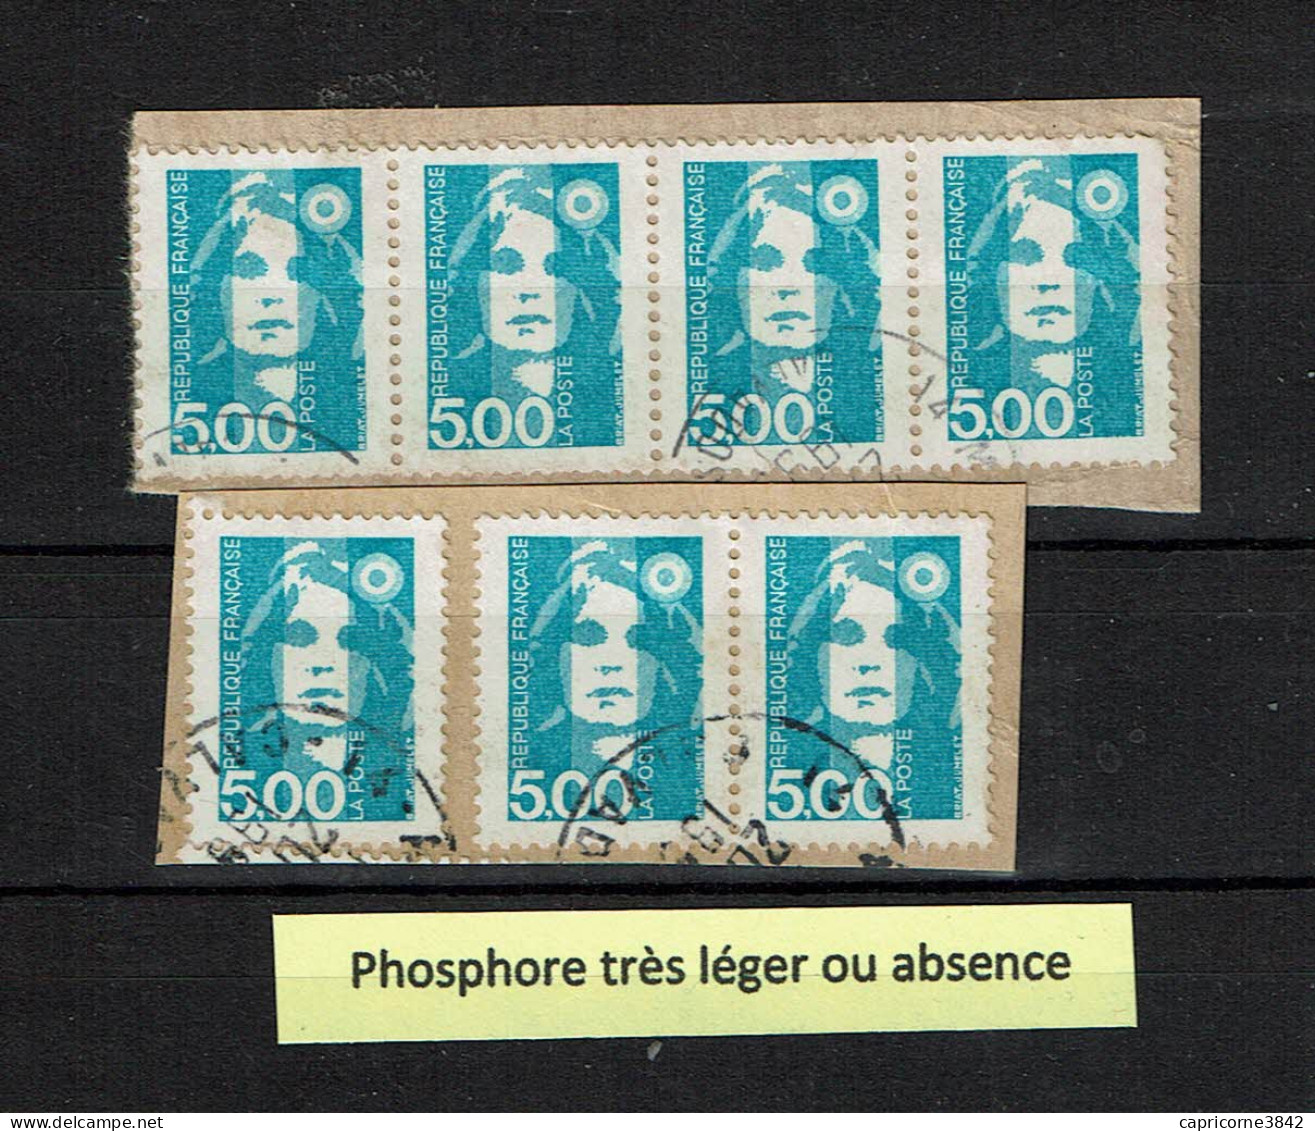 Variété Sur Timbres Marianne Du Bicentenaire N° 2625 (sur Fragments) - Phosphore Très Faible Ou Absent - Used Stamps